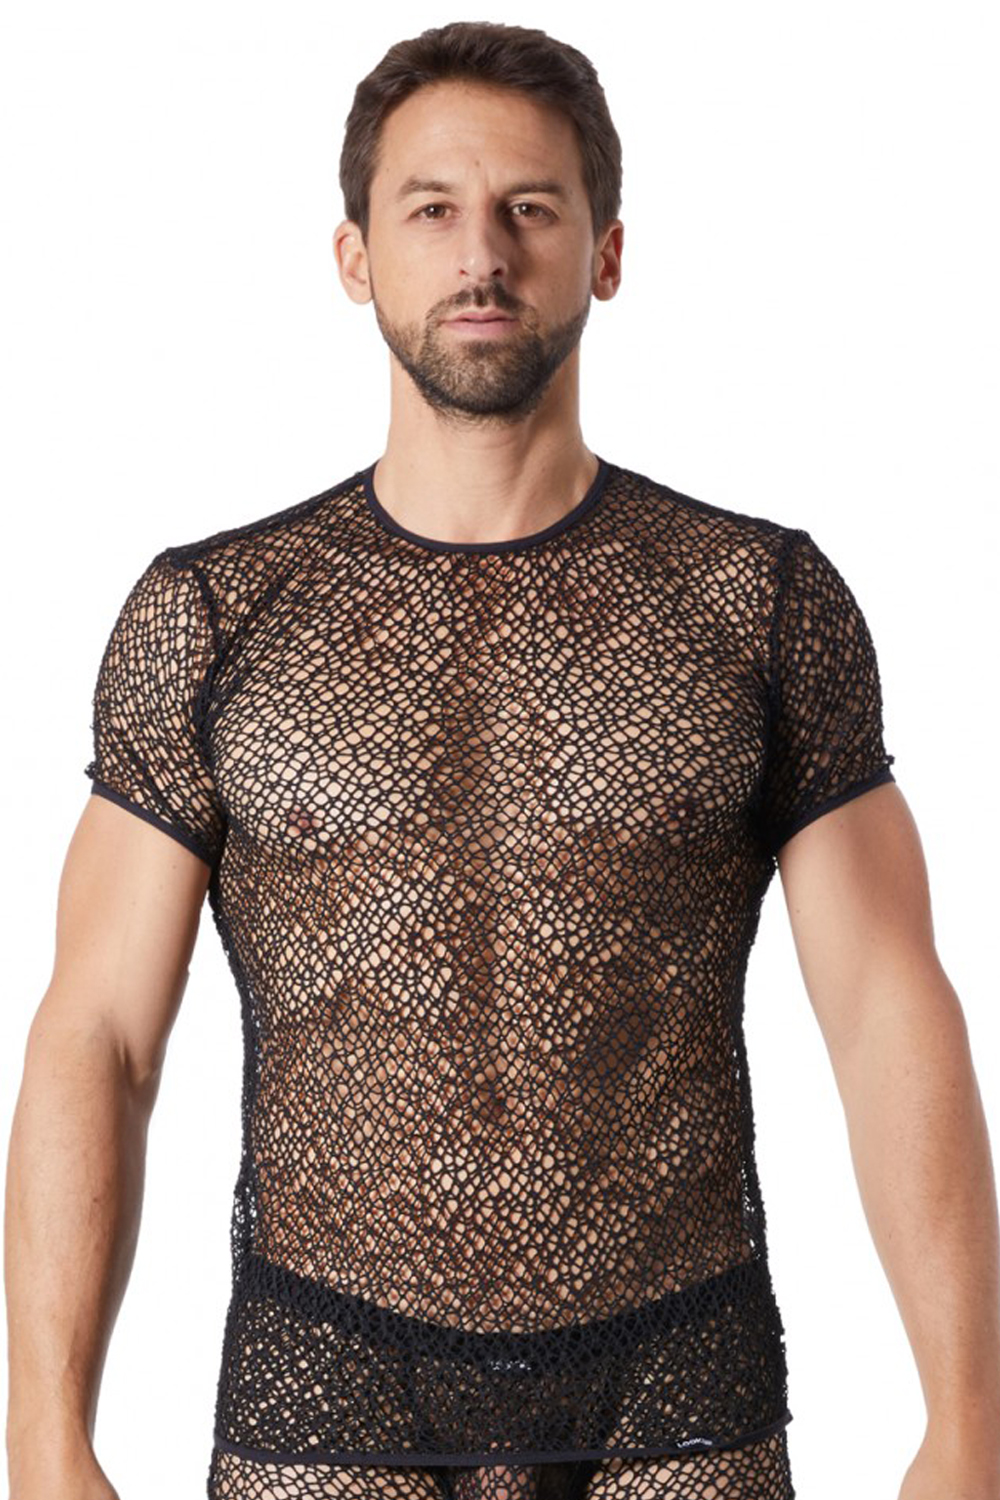 SCHWARZES Netz T-Shirt FETISH  von LookMe im Gaywear Style für eine Gay Fame Party